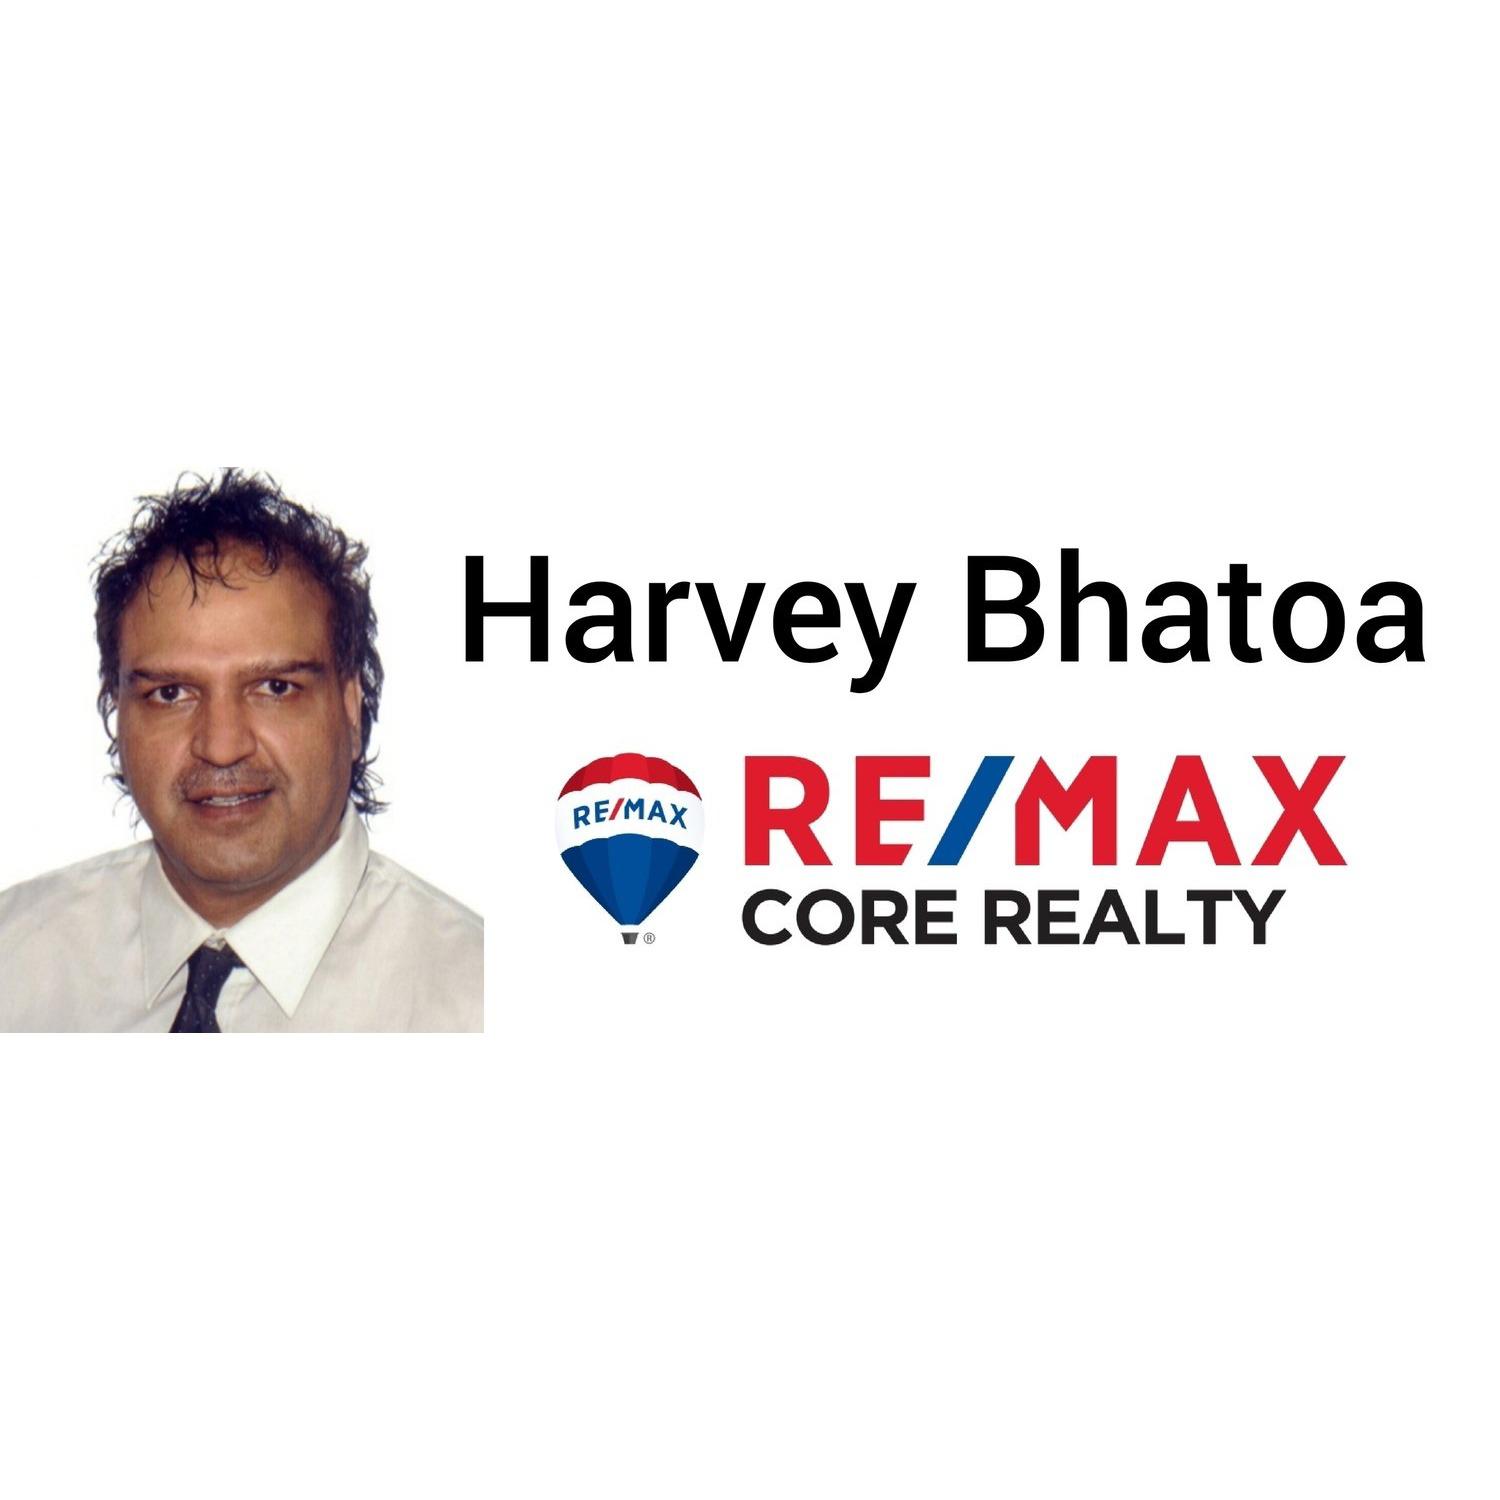 Harvey Bhatoa - RE/MAX Core Realty